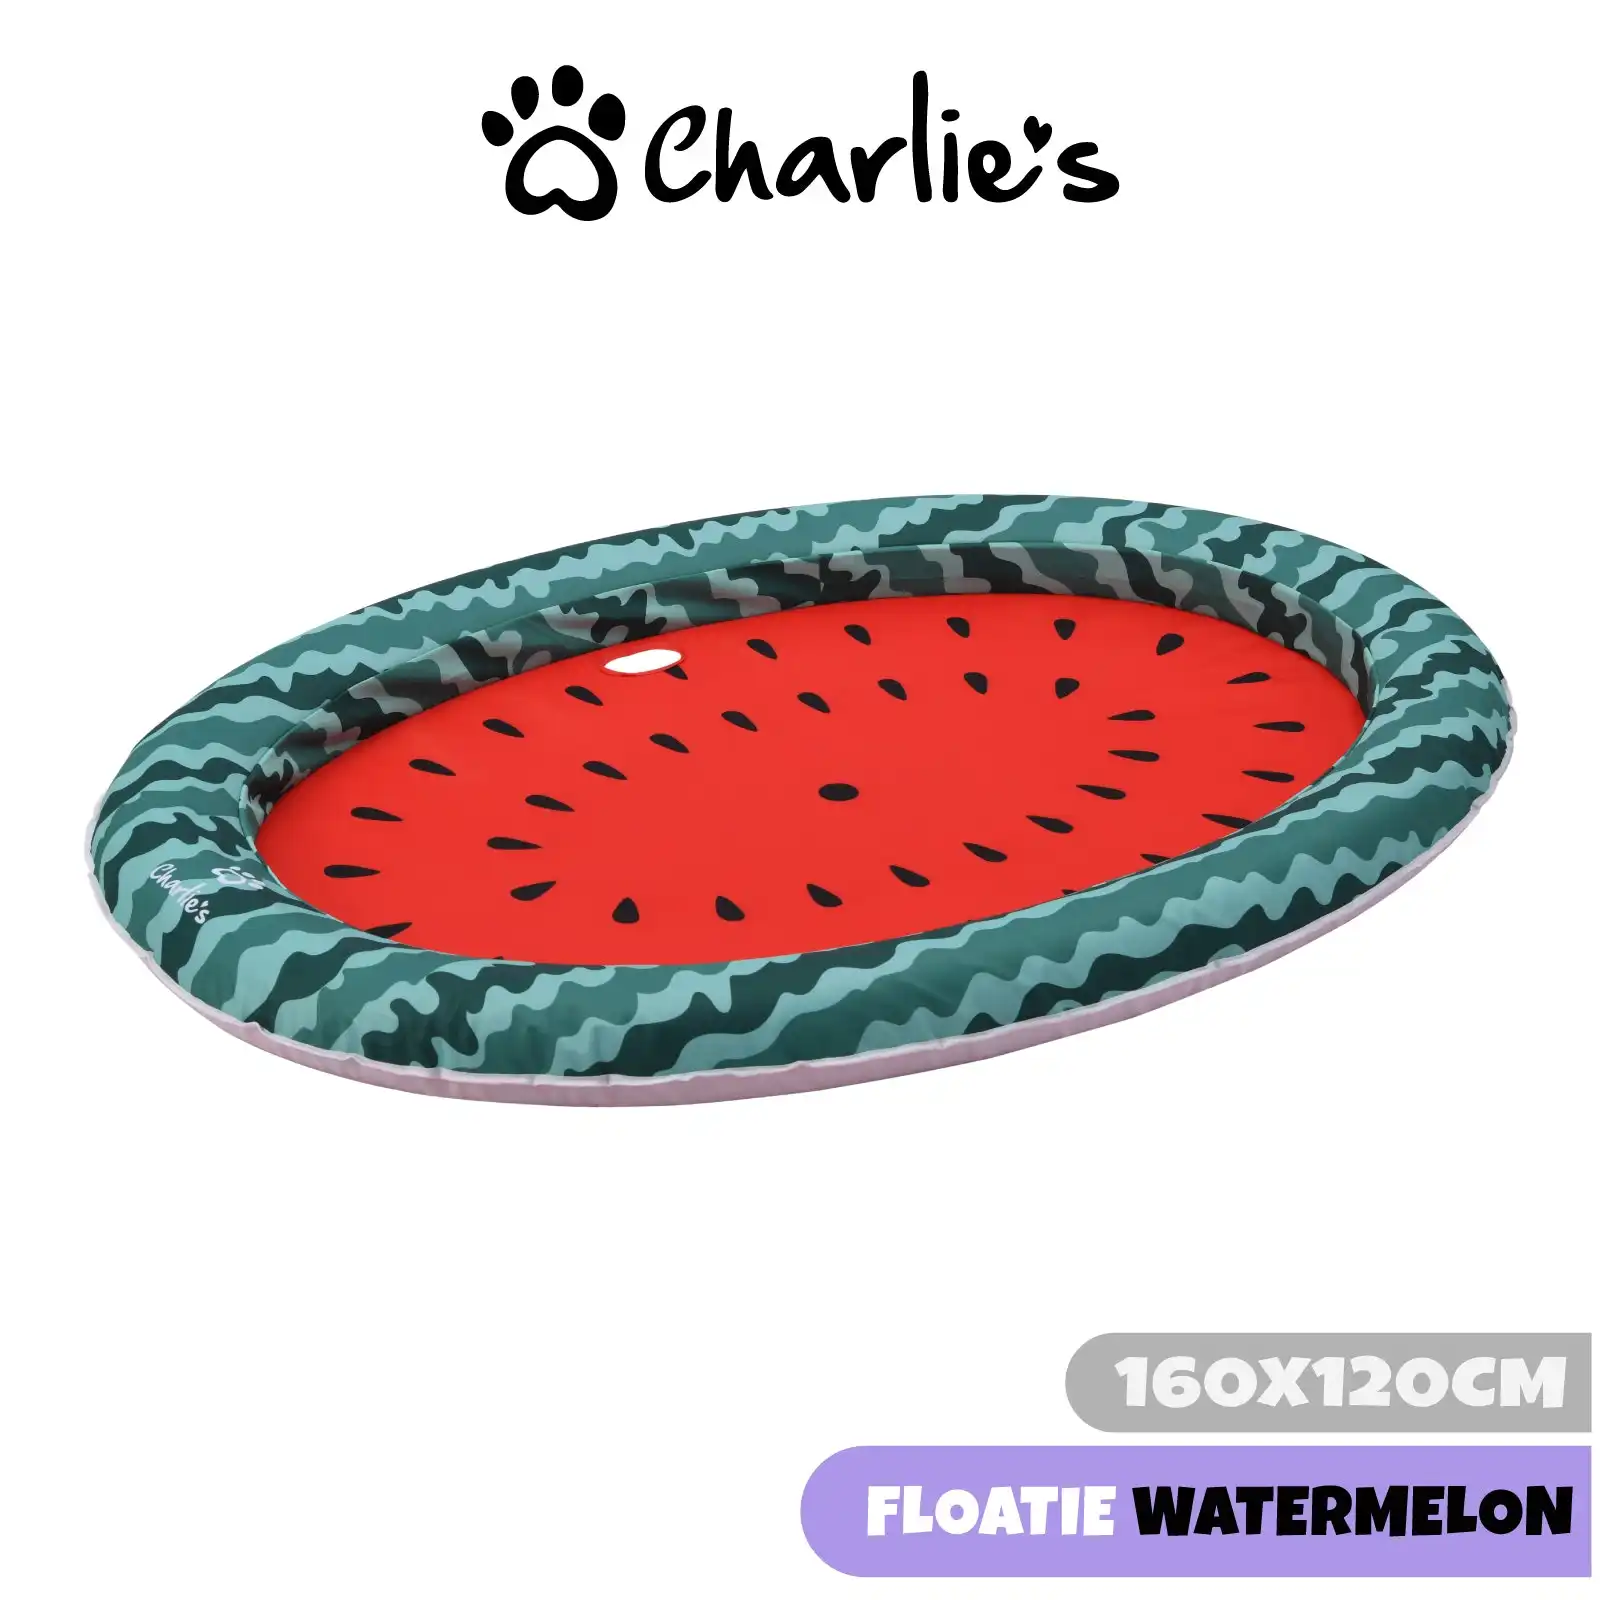 Charlie's Dog Floaties Watermelon 160x120cm